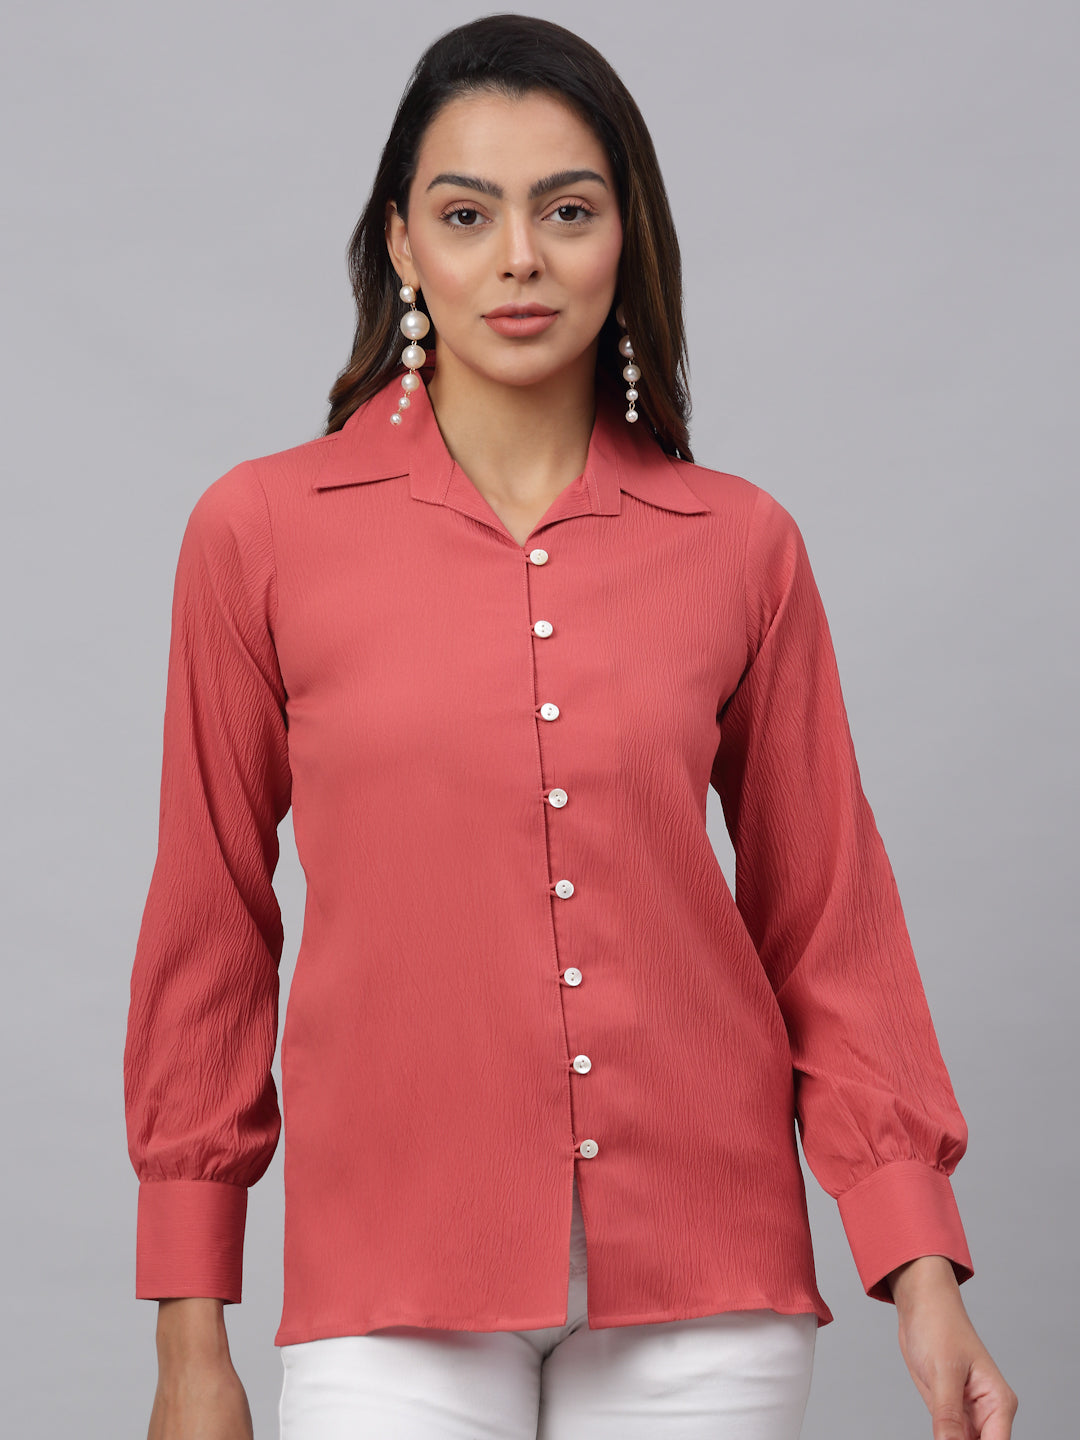 Jainish Women's Peach Solid Shirt - Peach - Distacart